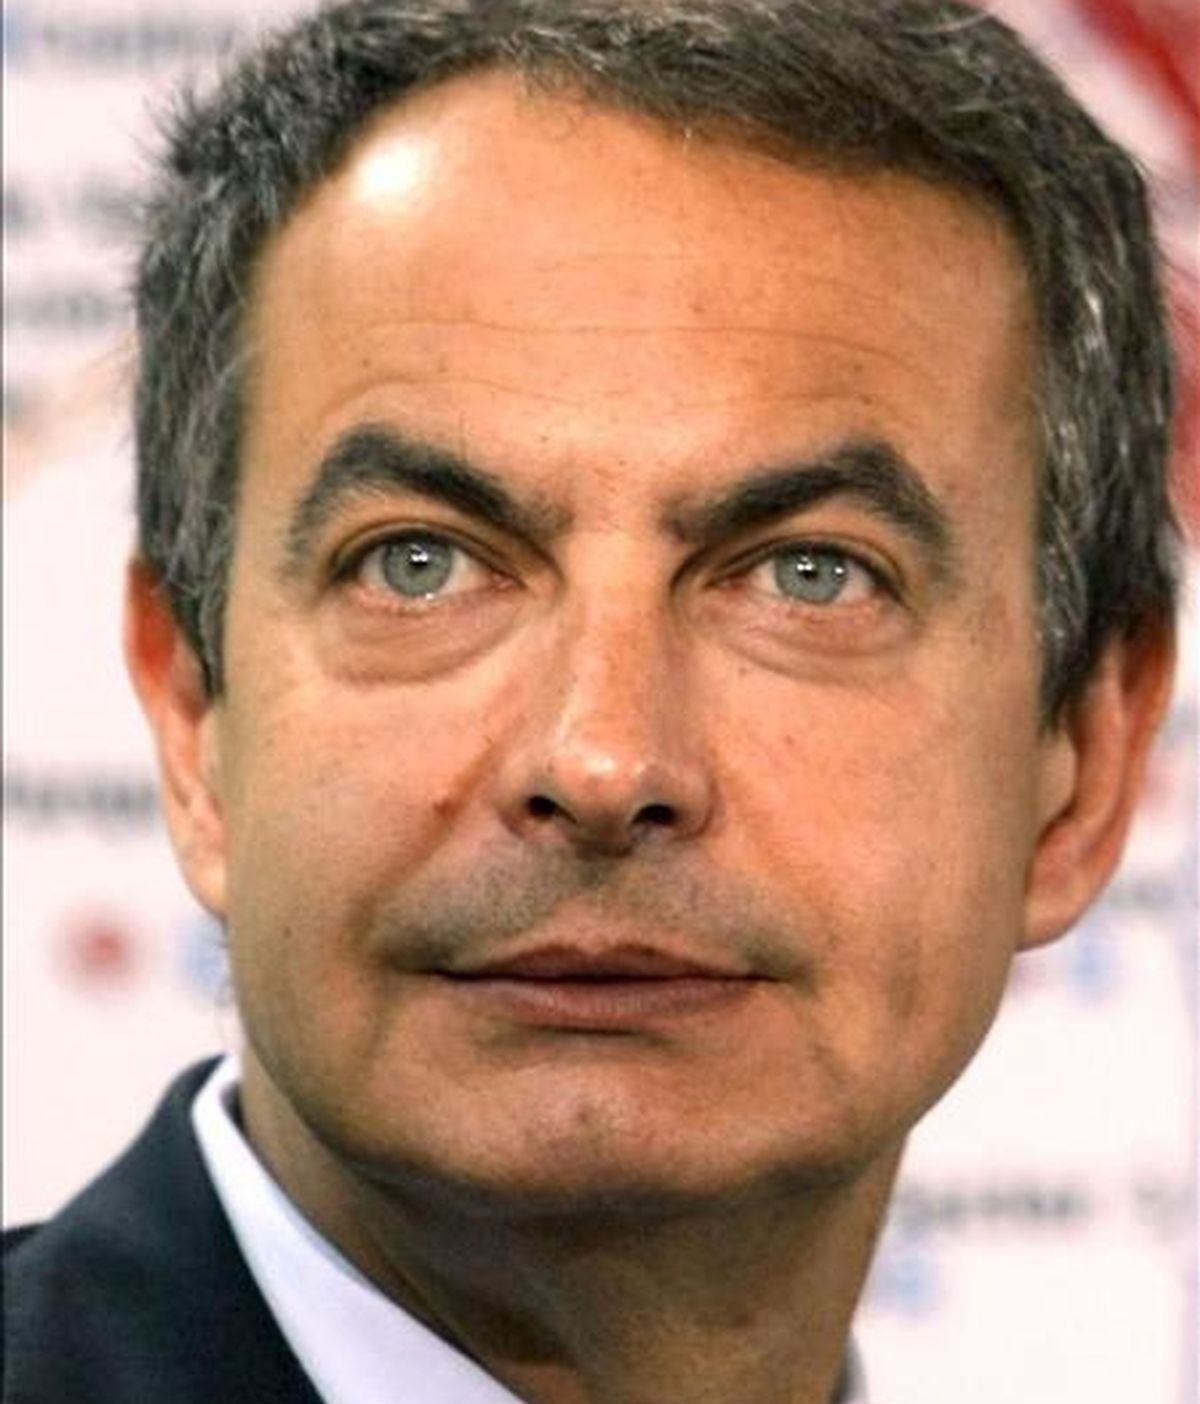 El presidente del Gobierno, José Luis Rodríguez Zapatero, insistió hoy en la necesidad de que la economía española cuente en estos momentos con "grandes palancas de progreso y grandes plataformas de inversión pública" que le ayuden a salir de la crisis. EFE